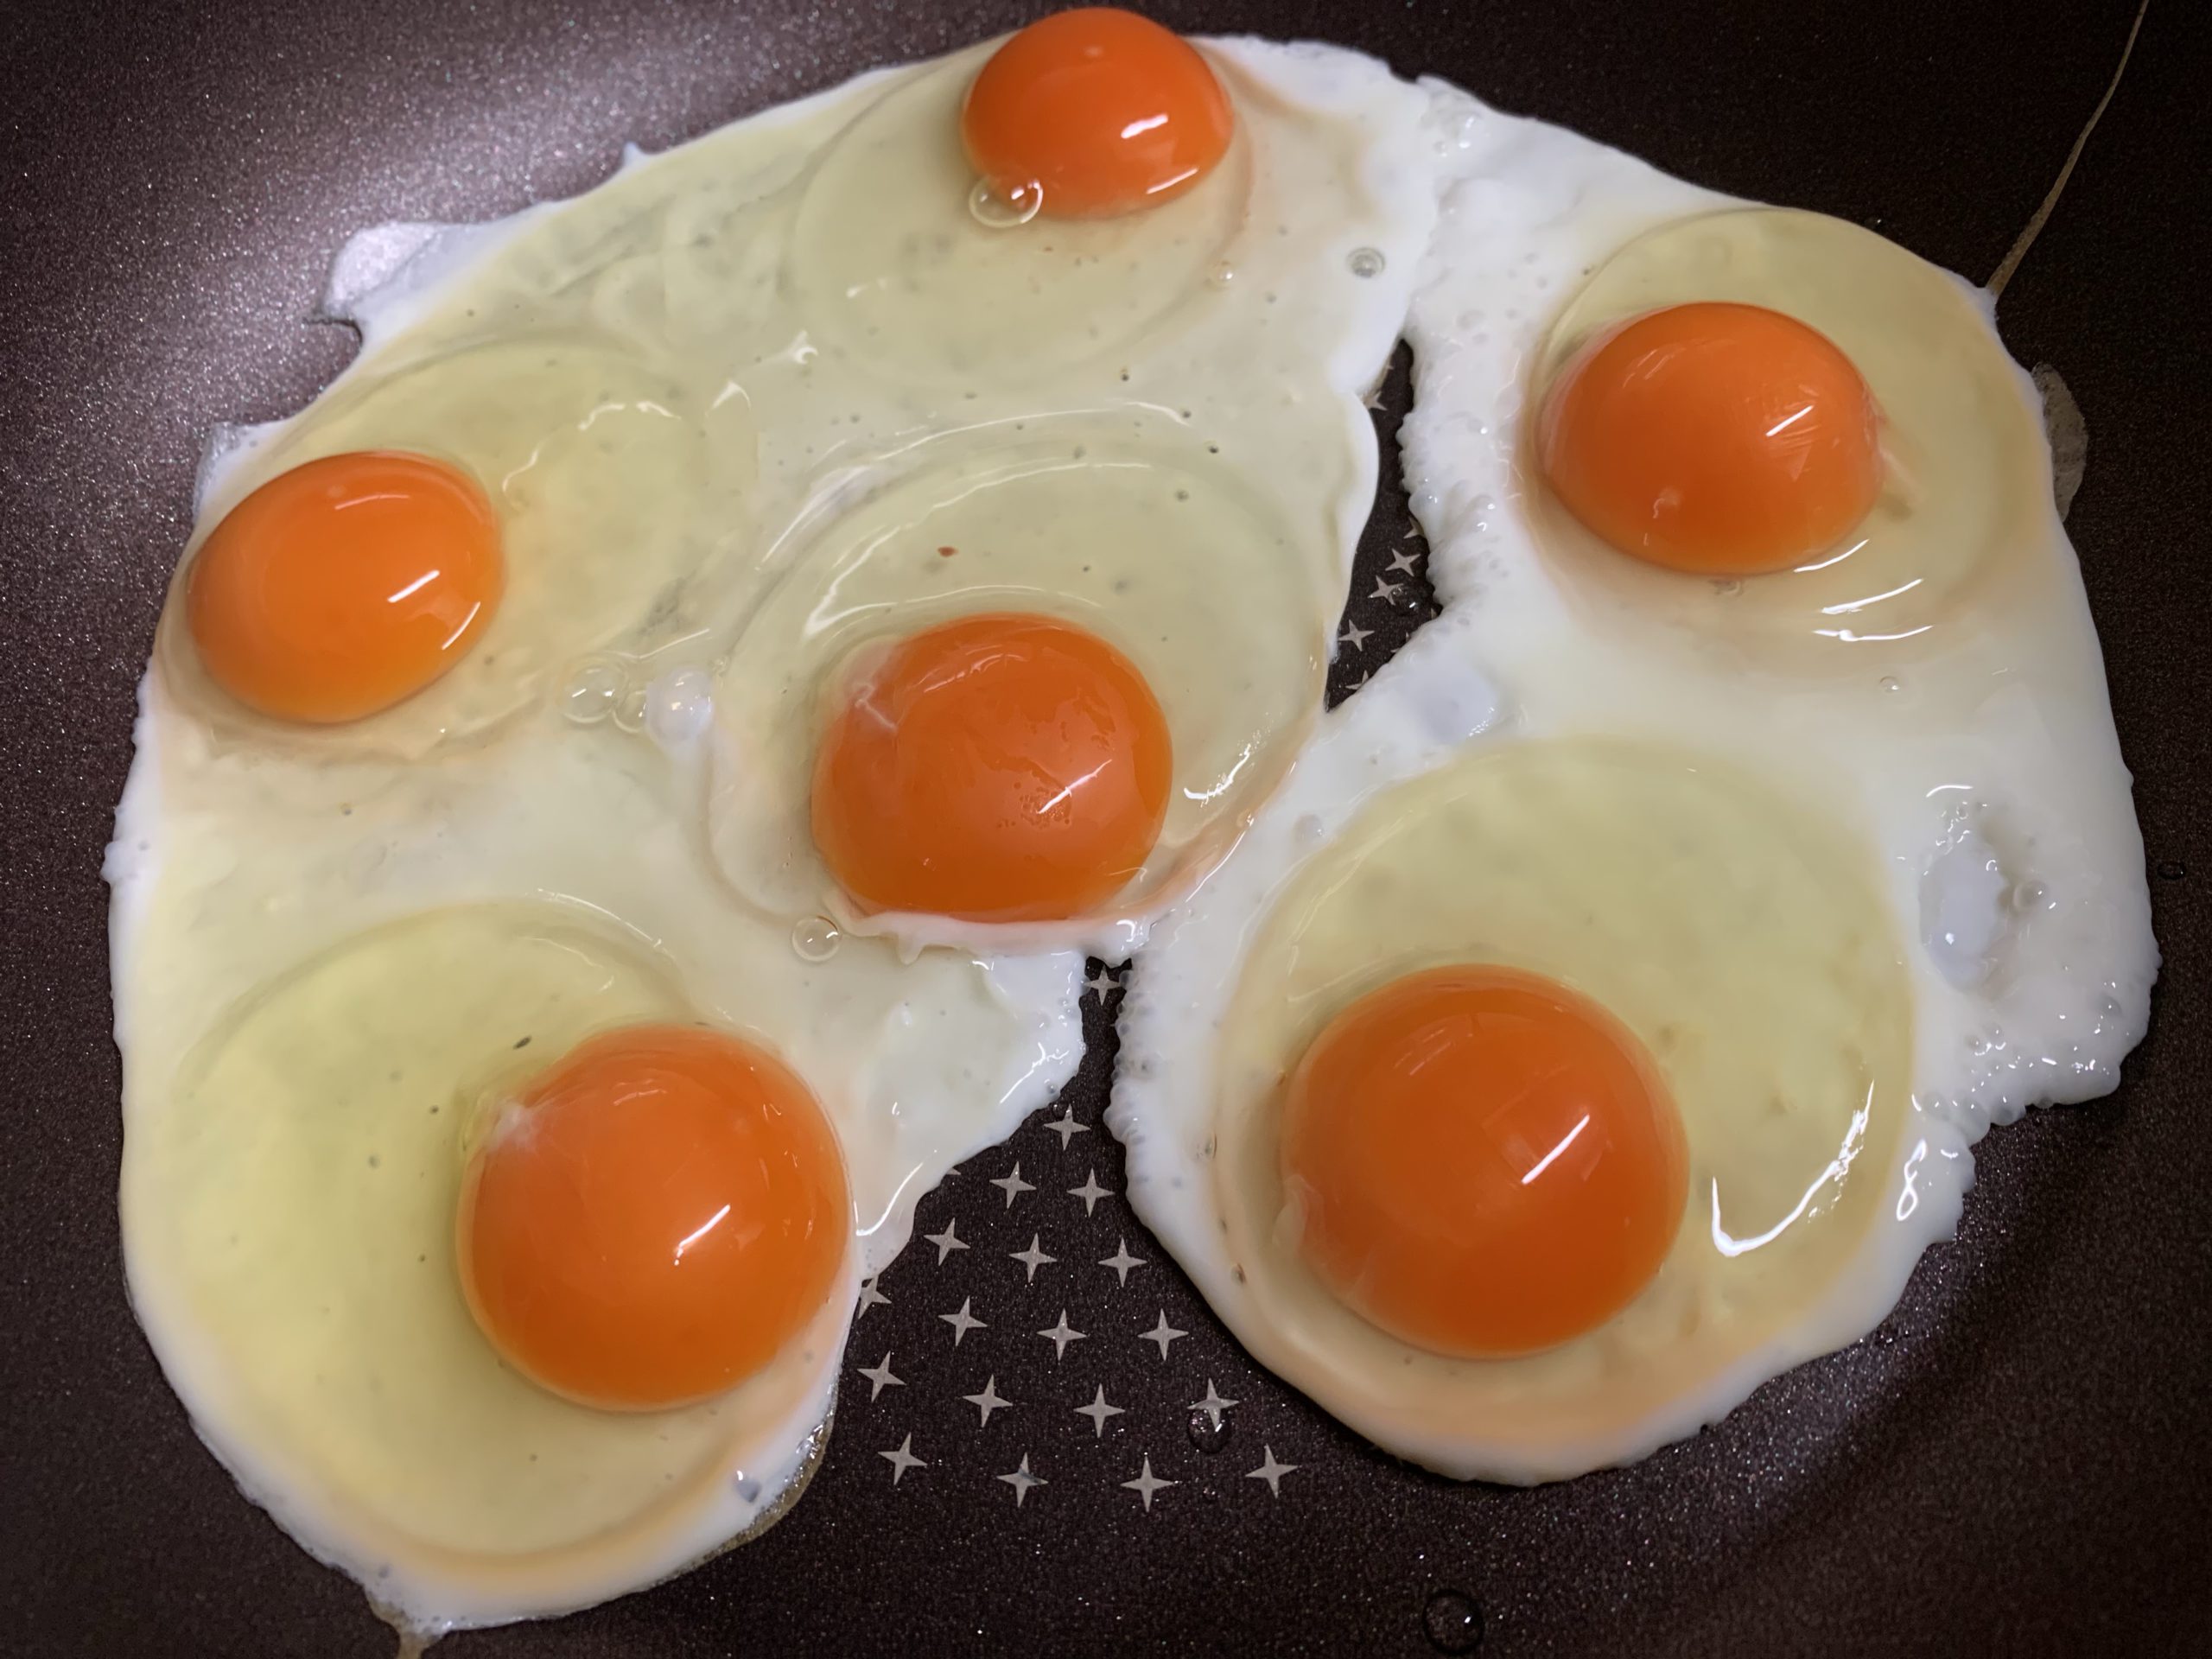 卵に含まれる栄養素で健康に良い色々な効果がある-卵(たまご)の話|社長のブログ | 大熊養鶏場